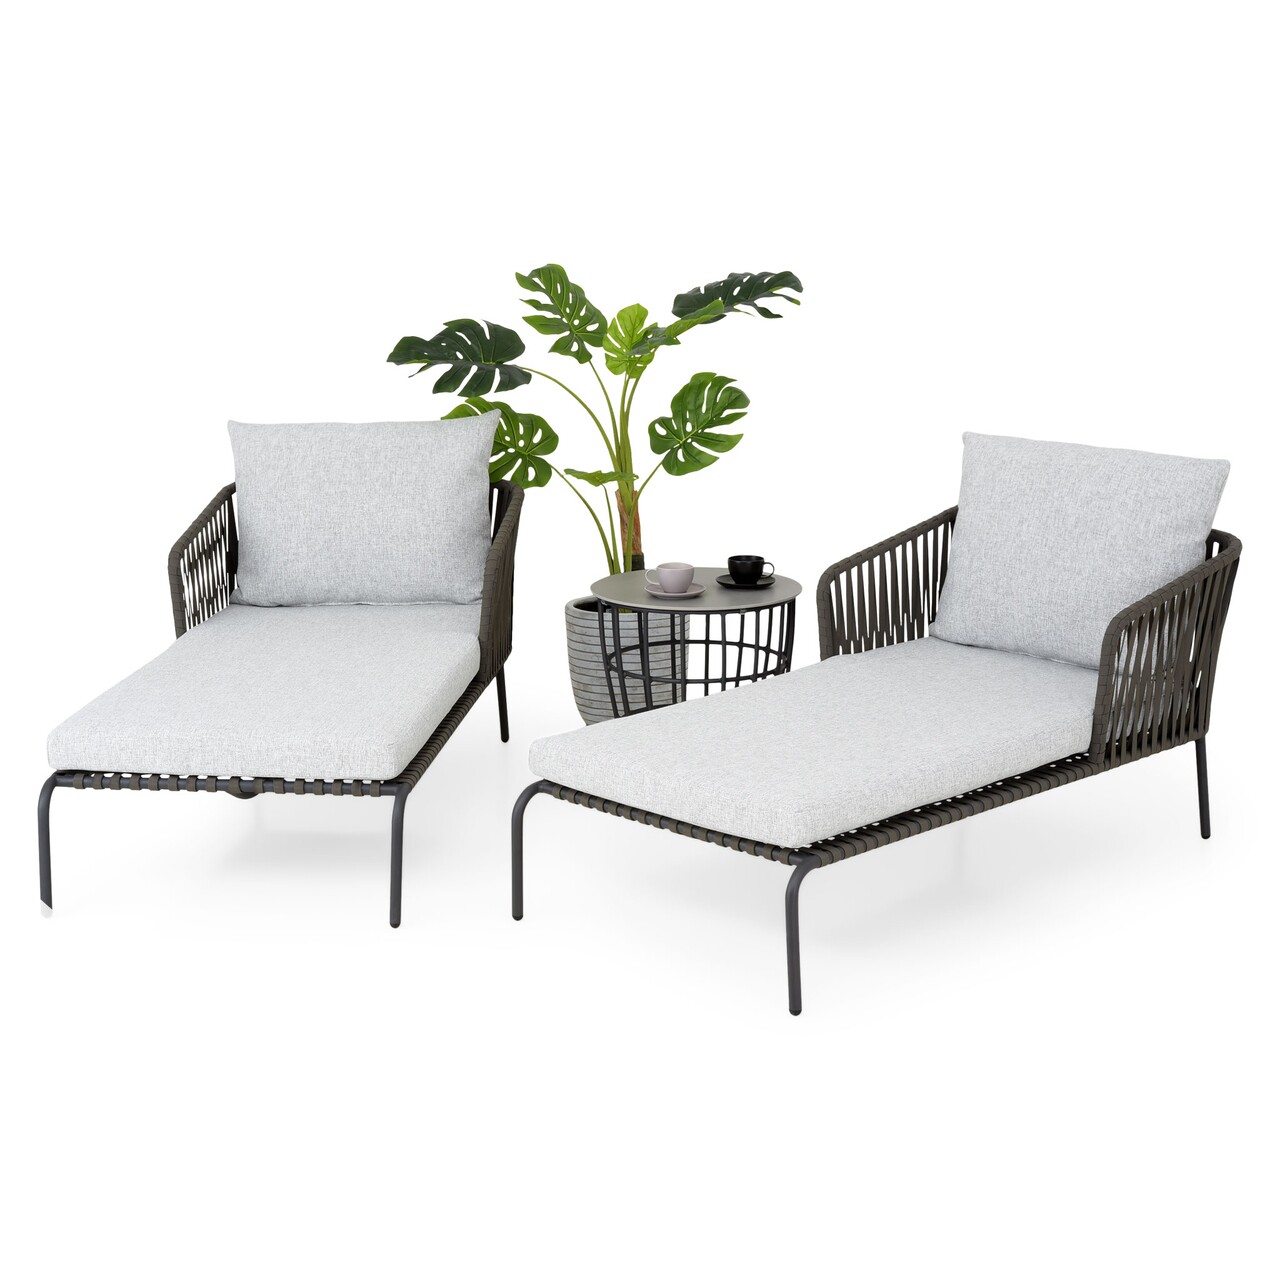 Milano Kerti terasz/bútor szett, 2 db napozóágy és asztalka, alumínium, szürke/fehér